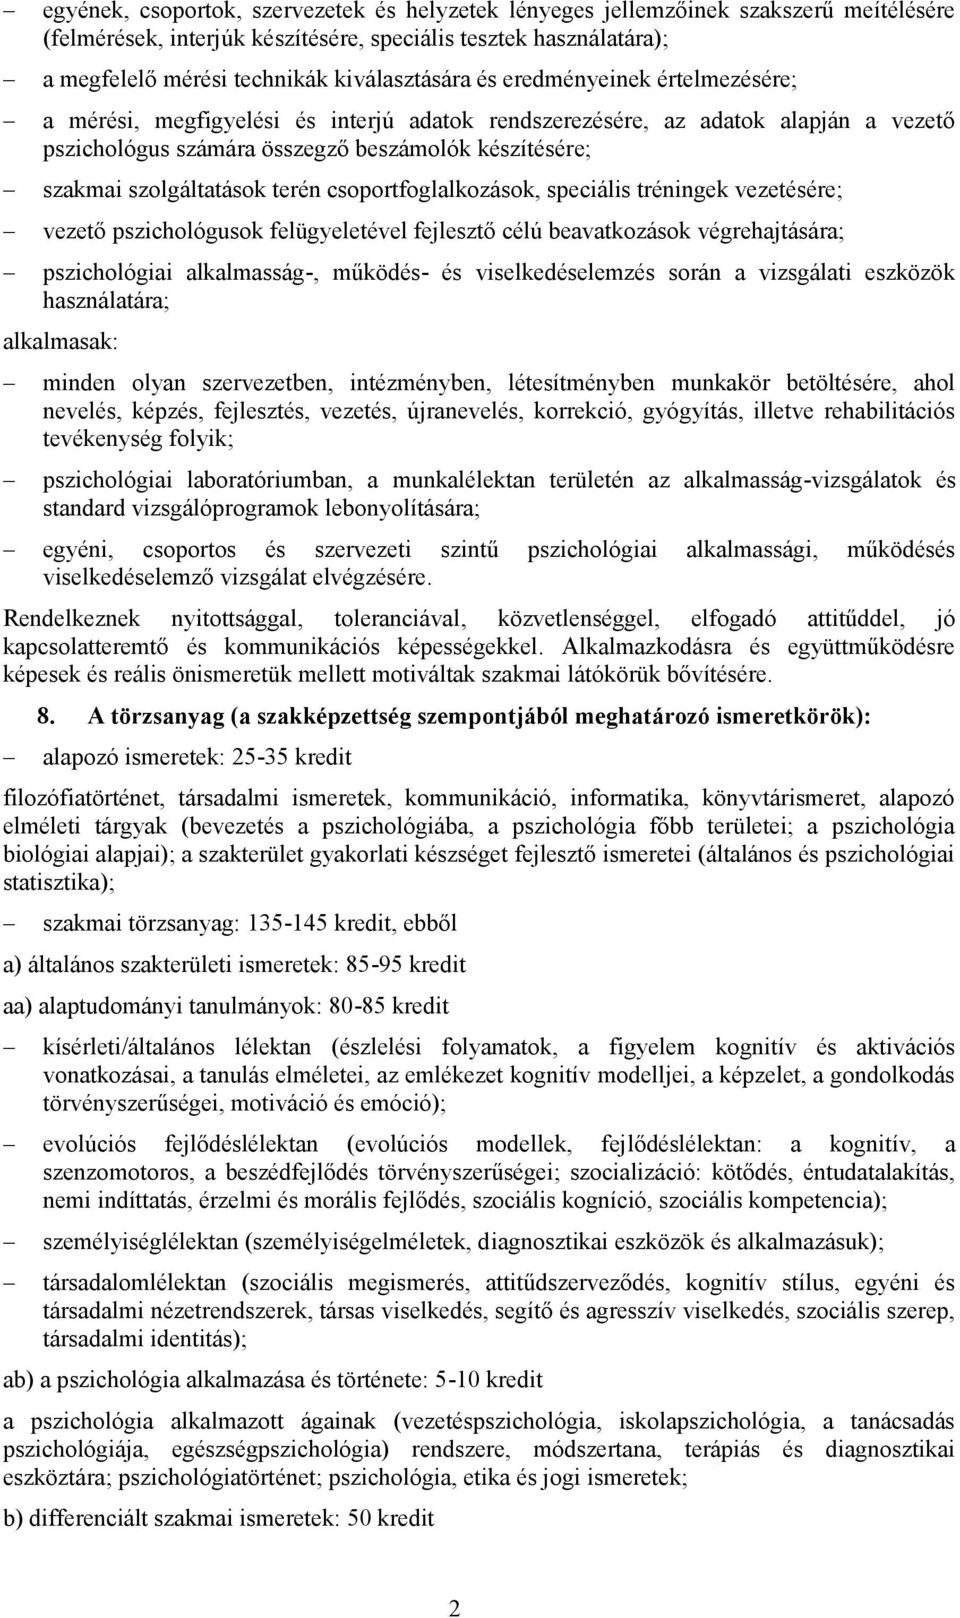 PSZICHOLÓGIA ALAPKÉPZÉSI SZAK - PDF Ingyenes letöltés